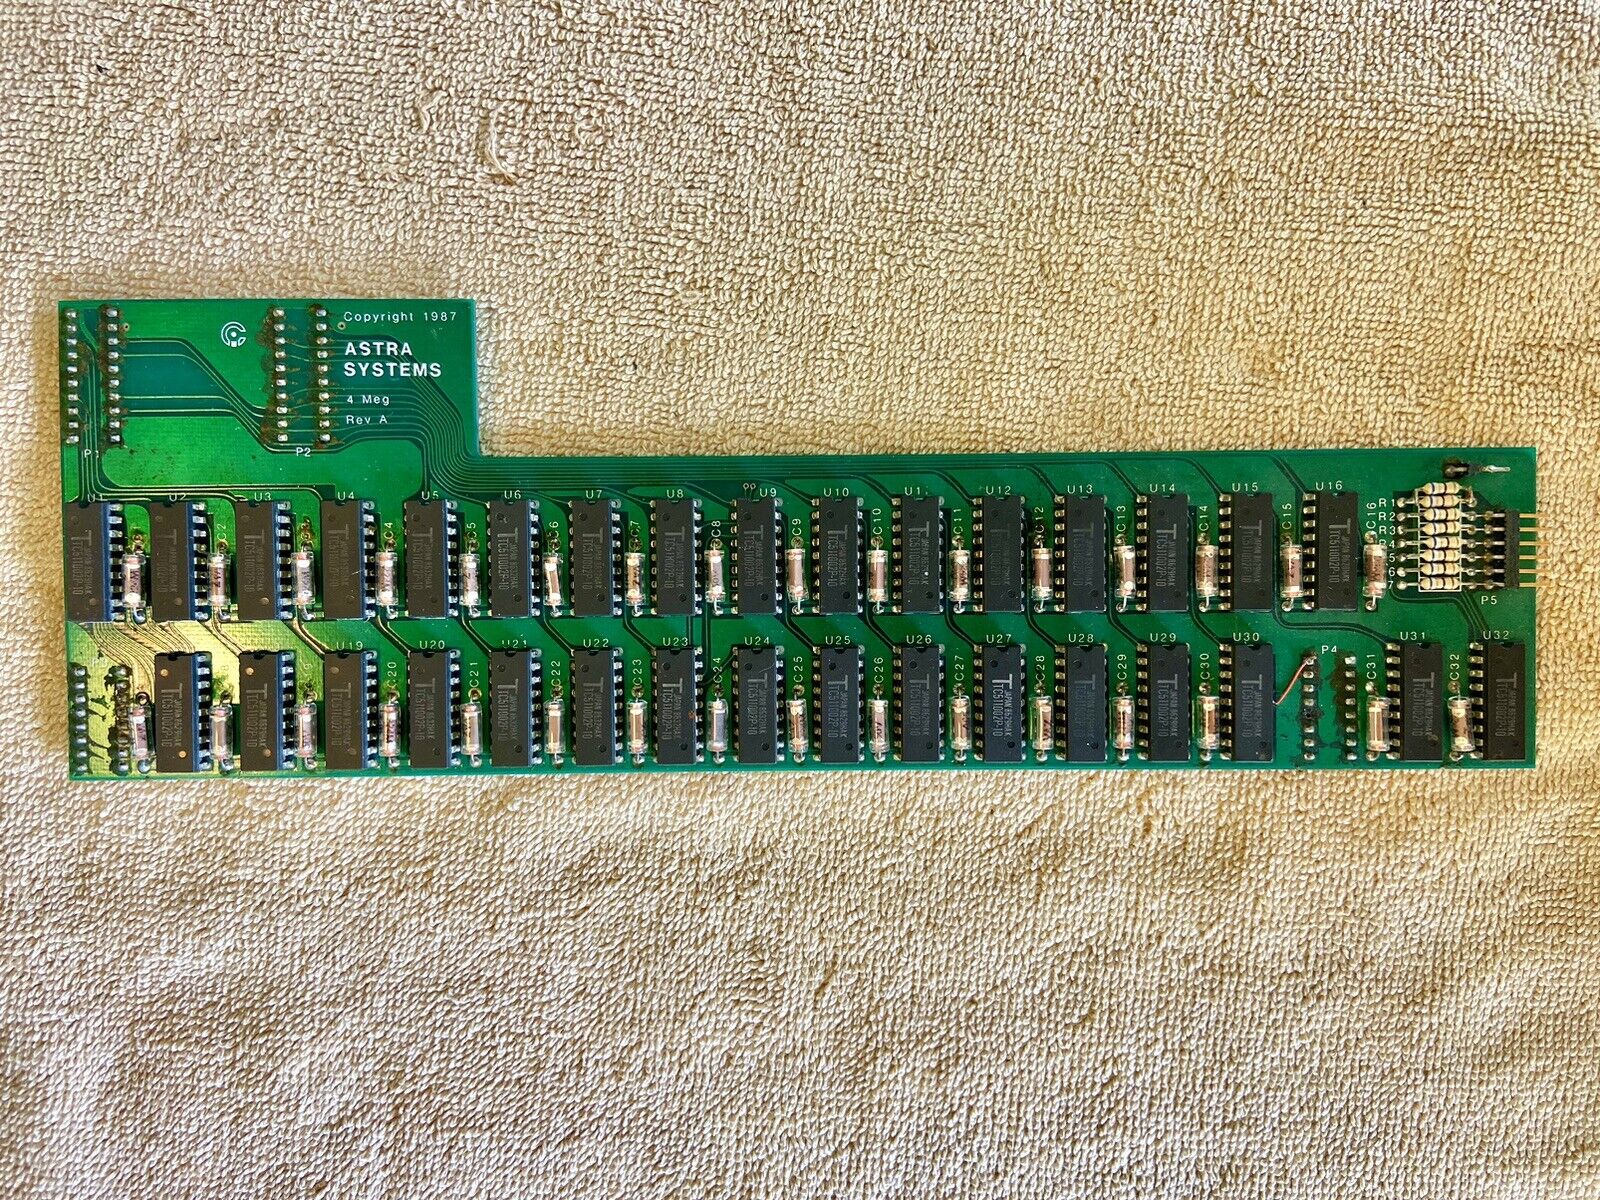 Atari 520 1040 ST Astra Systems 4 Meg Computer Memory Card 4MB